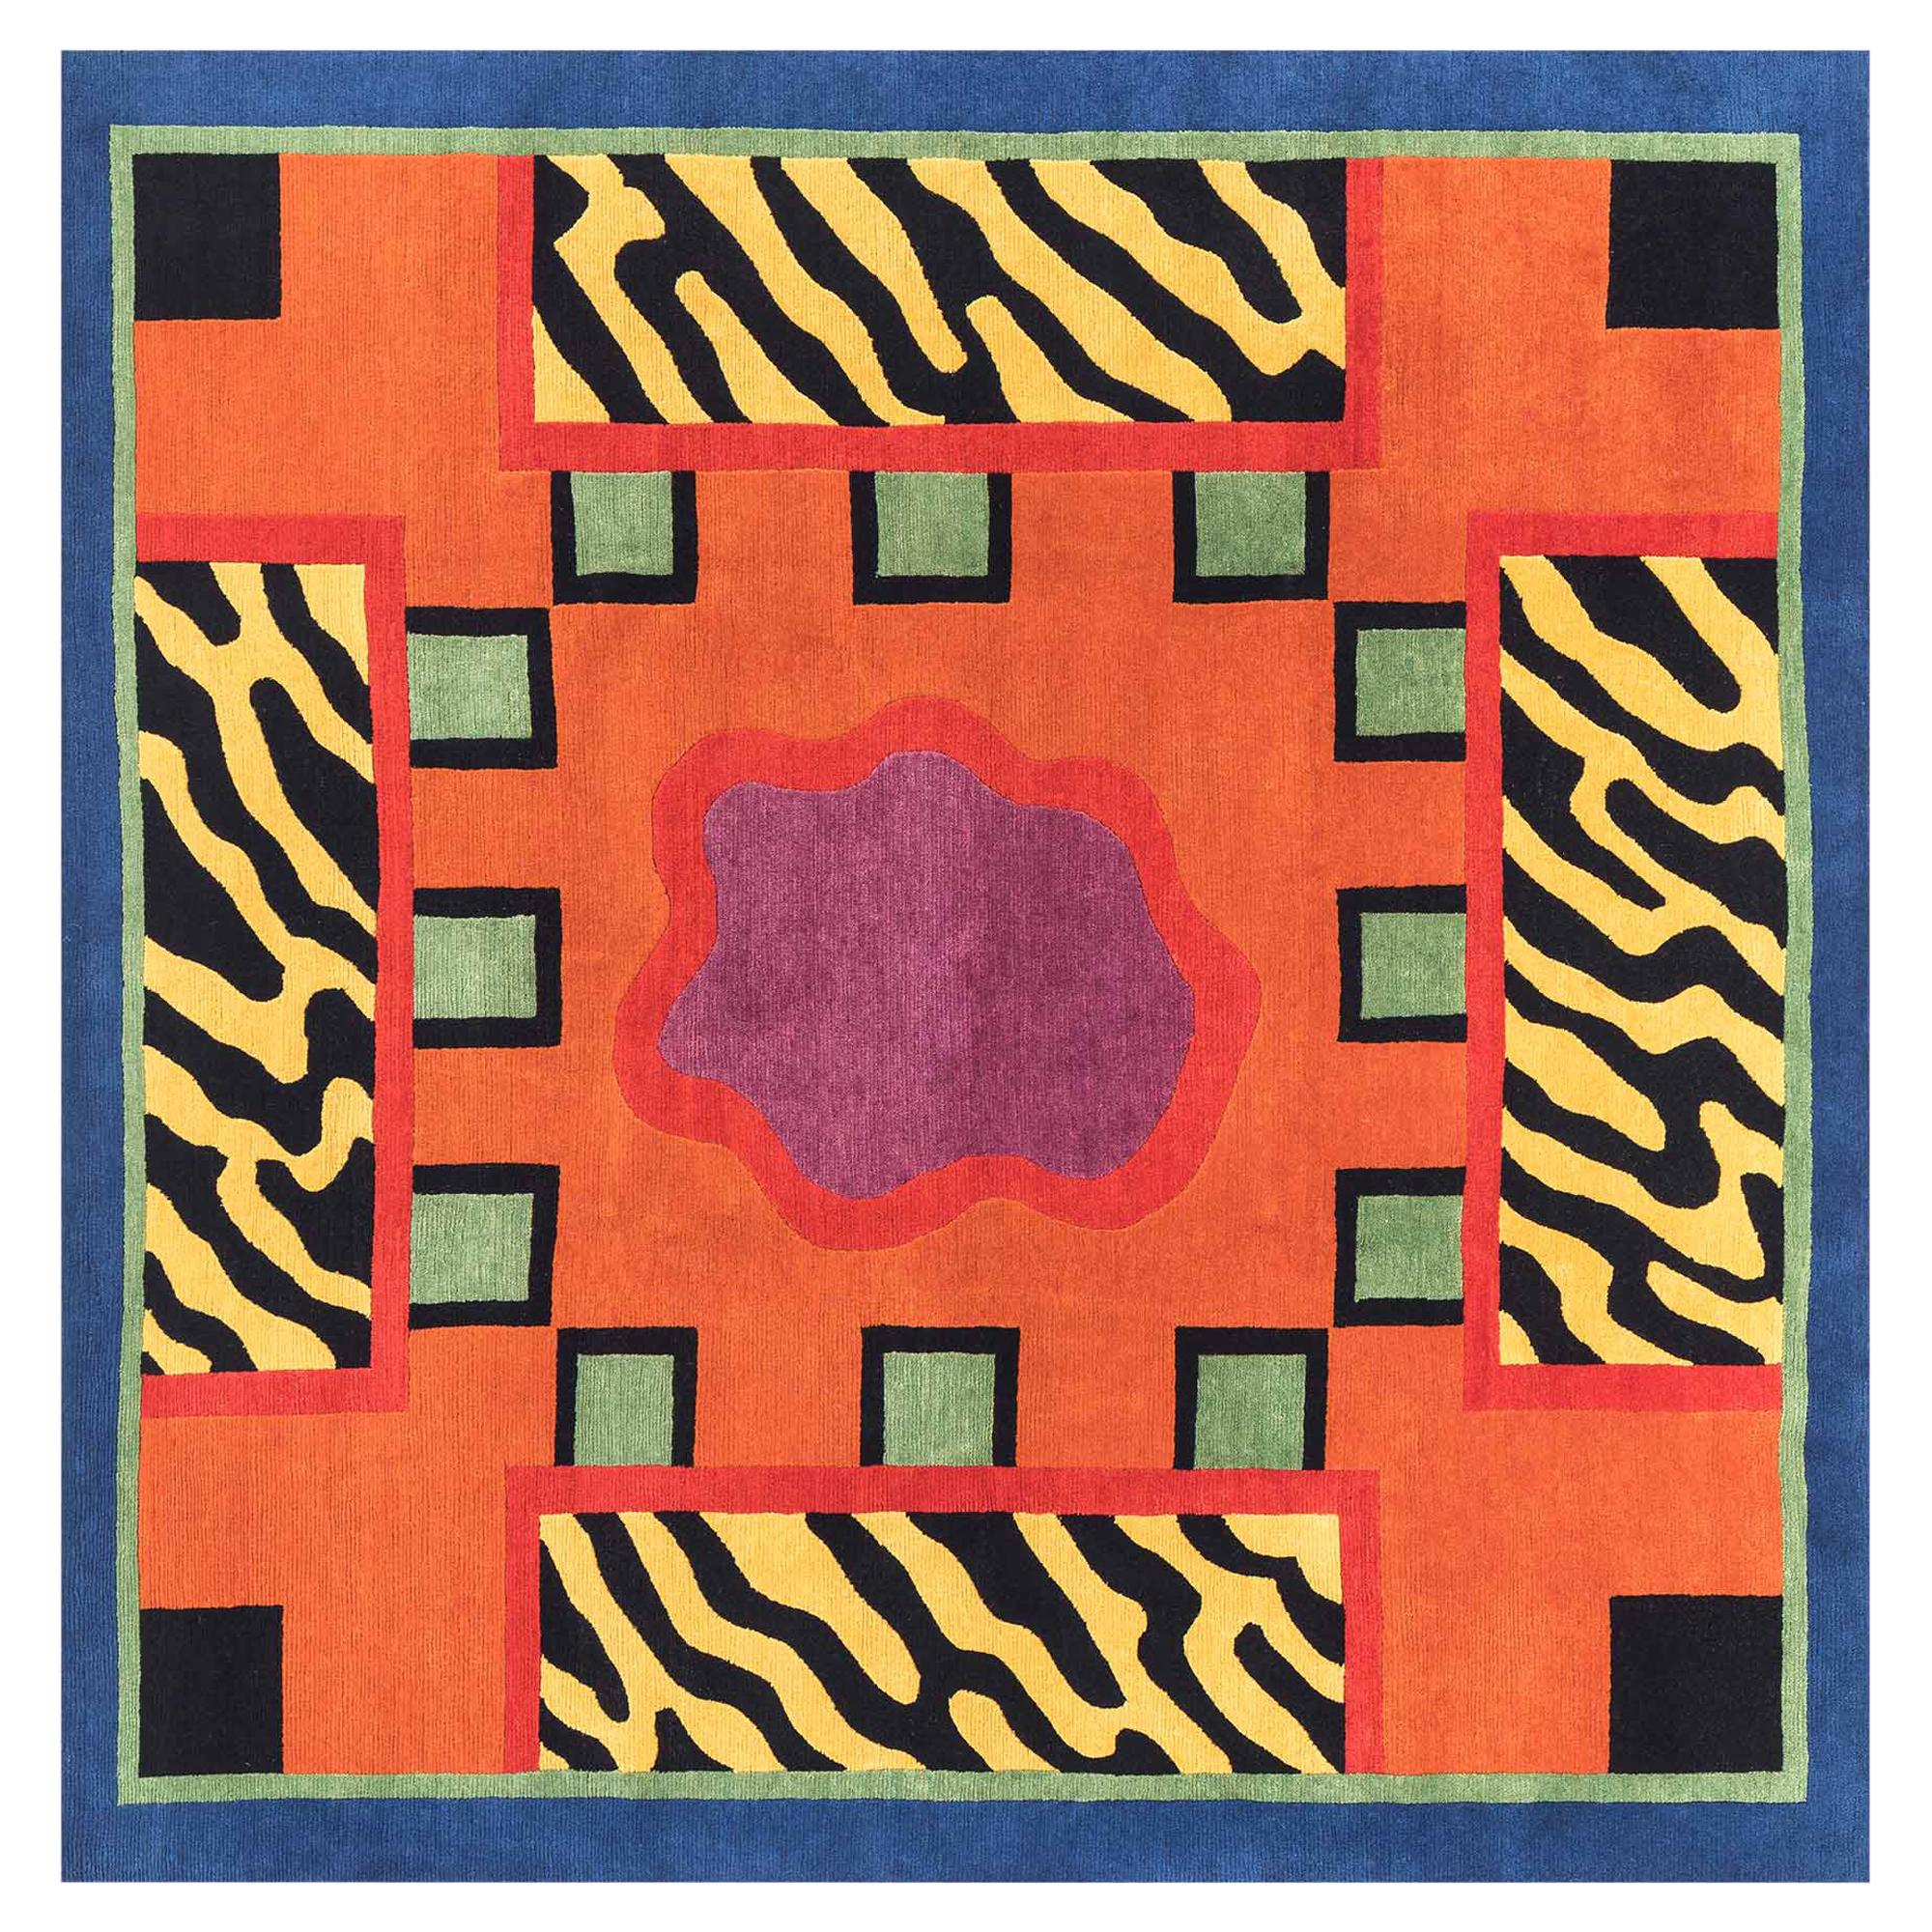 EQUADOR Woollen Carpet by Nathalie du Pasquier for Post Design/Memphis